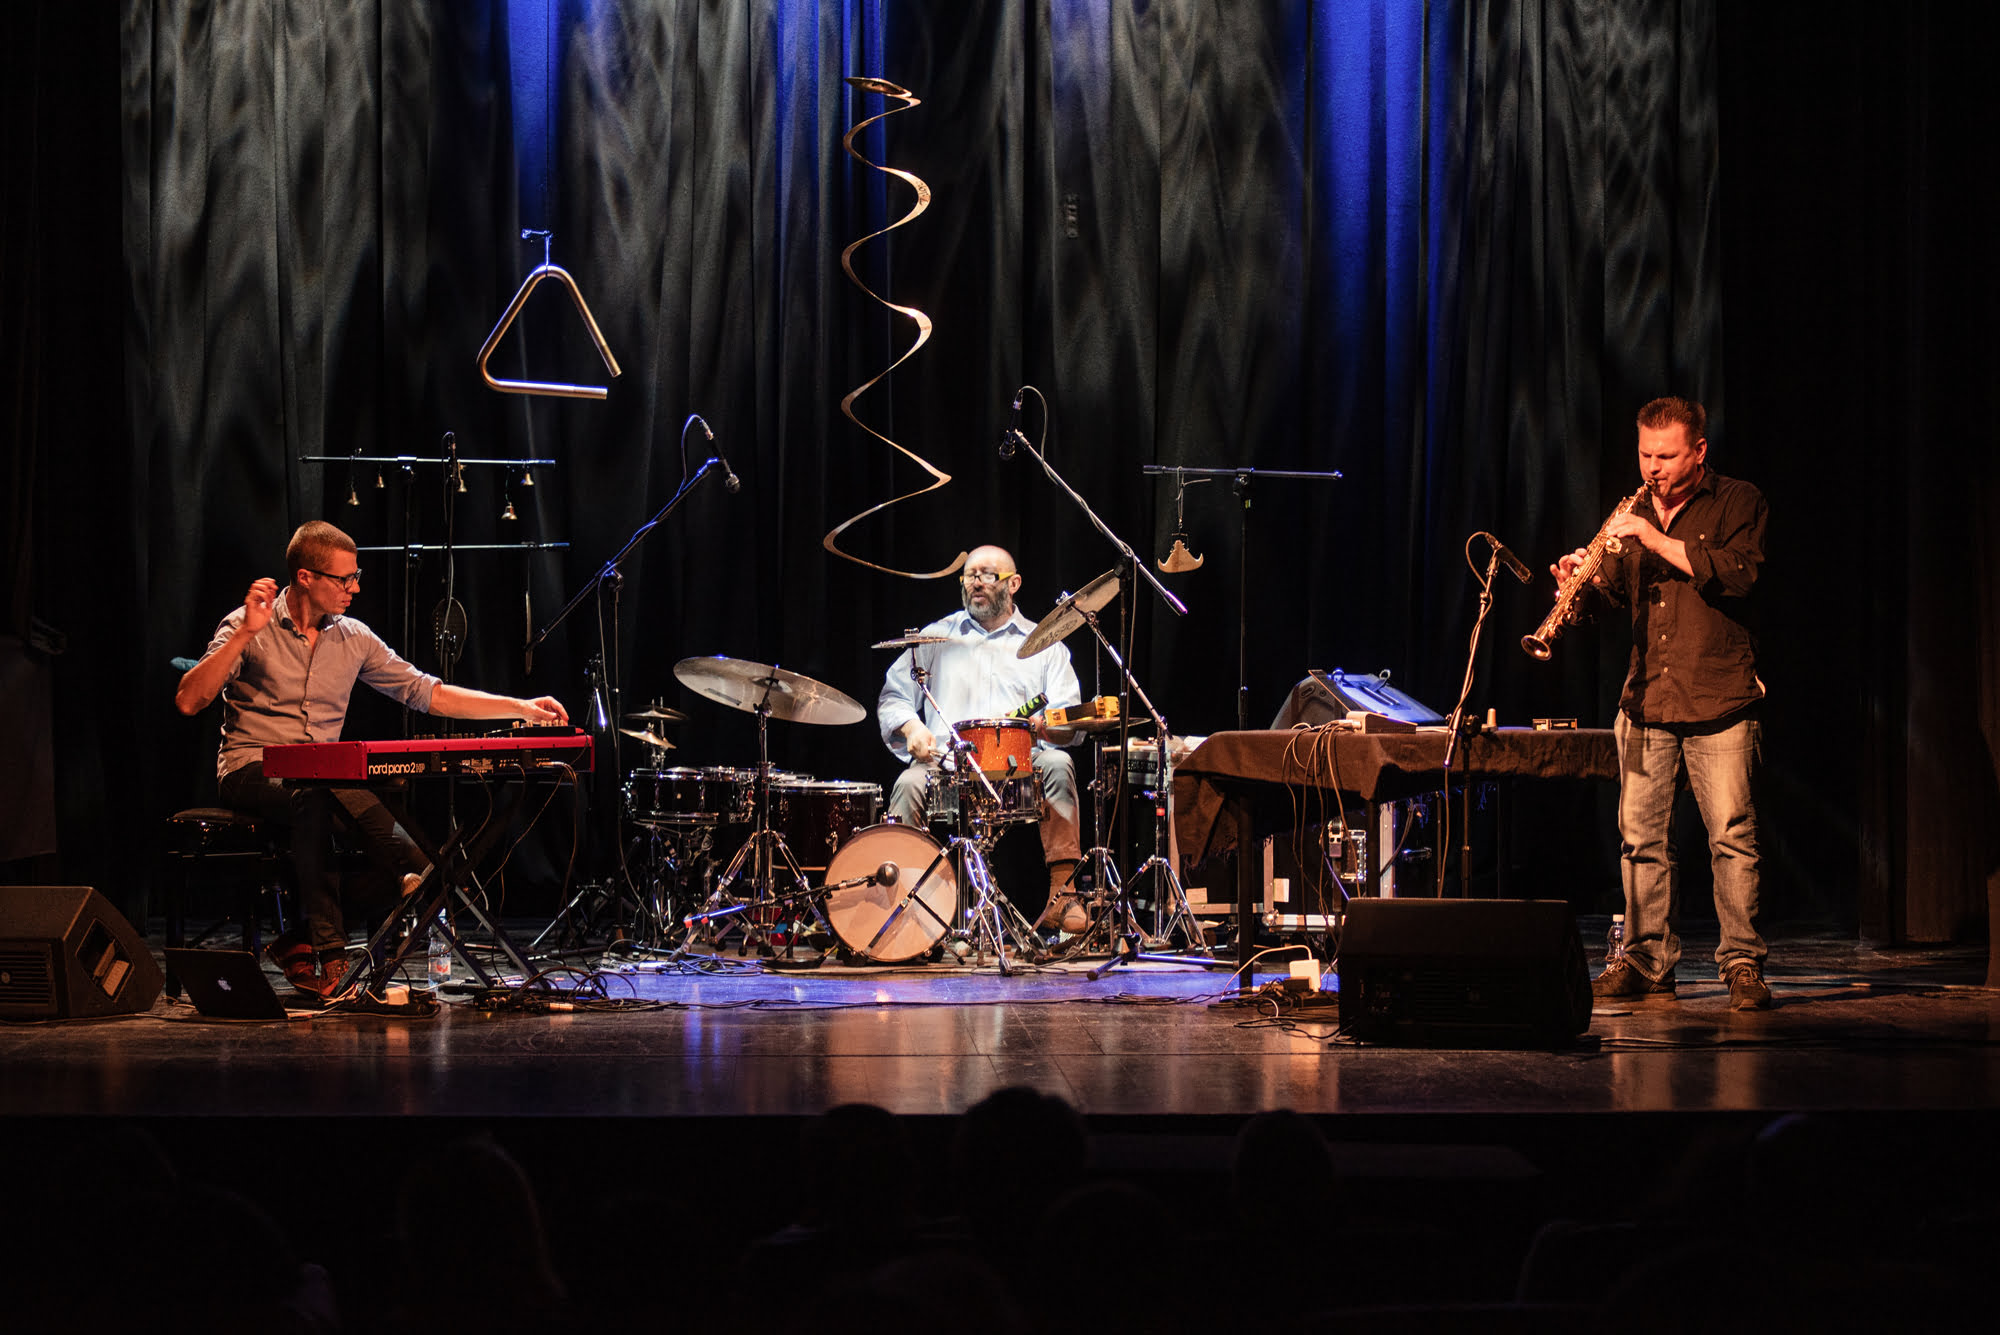 Zdjęcie kolorowe ze sceny, podczas koncertu. Przedstawia trzech muzyków:, od lewej strony siedzi pierwszy przy klawiszach, w środku perkusista, po prawej stronie mężczyzna gra na klarnecie.